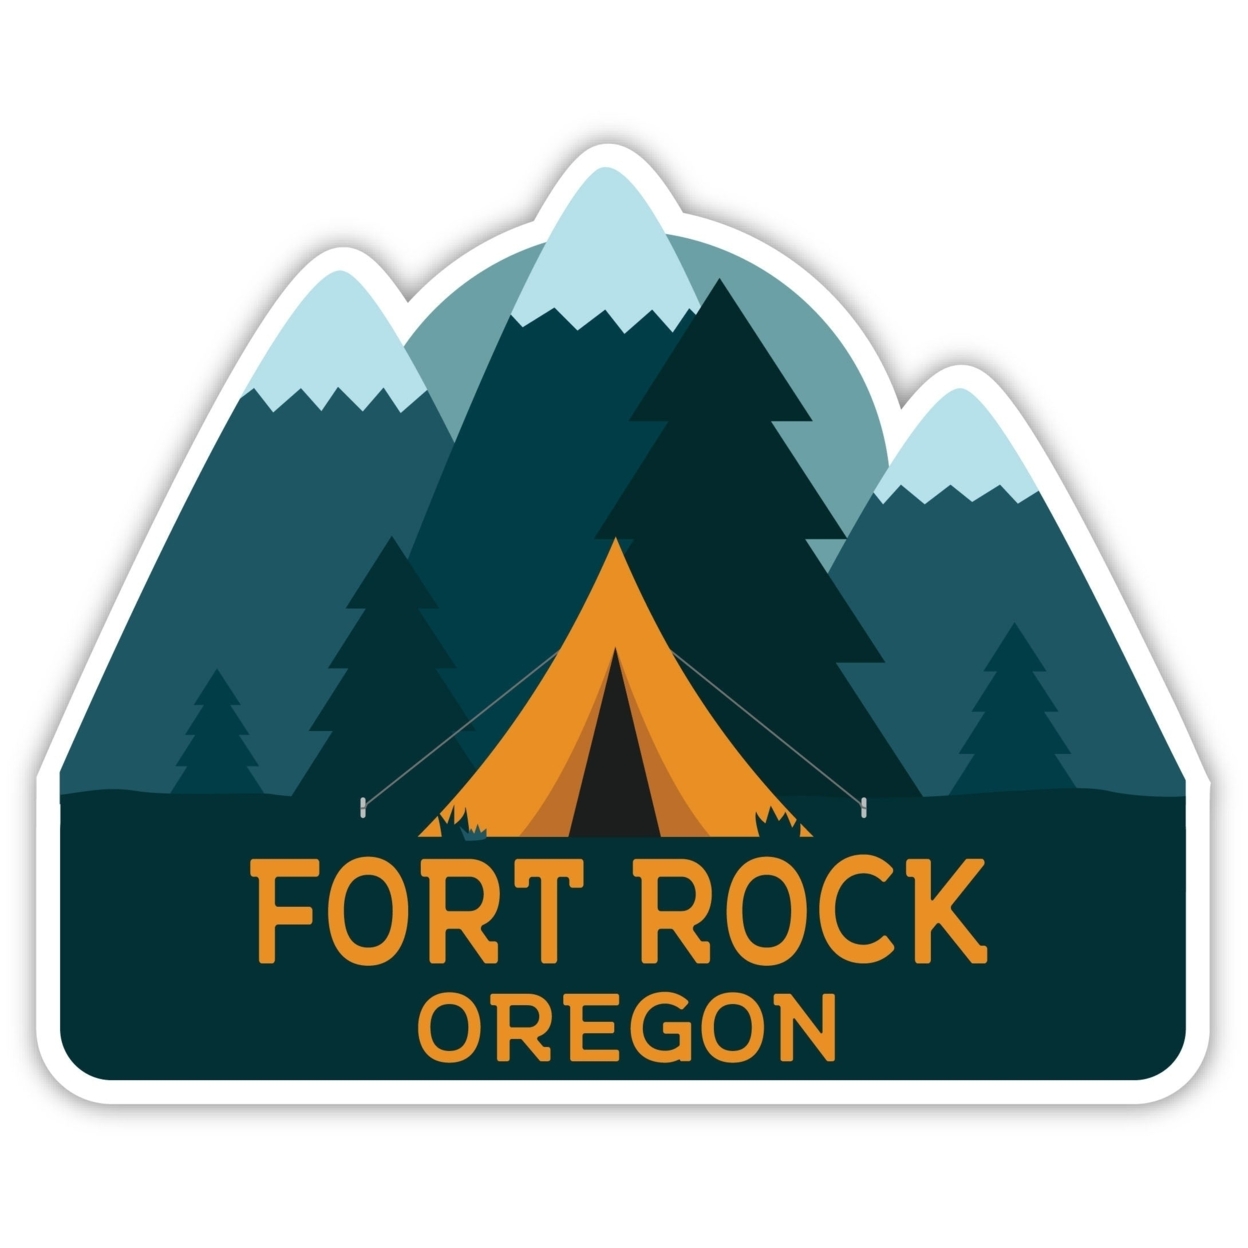 Fort Rock Oregon Souvenir Decorative Stickers (Choose Theme And Size) - Single Unit, 10-Inch, Tent